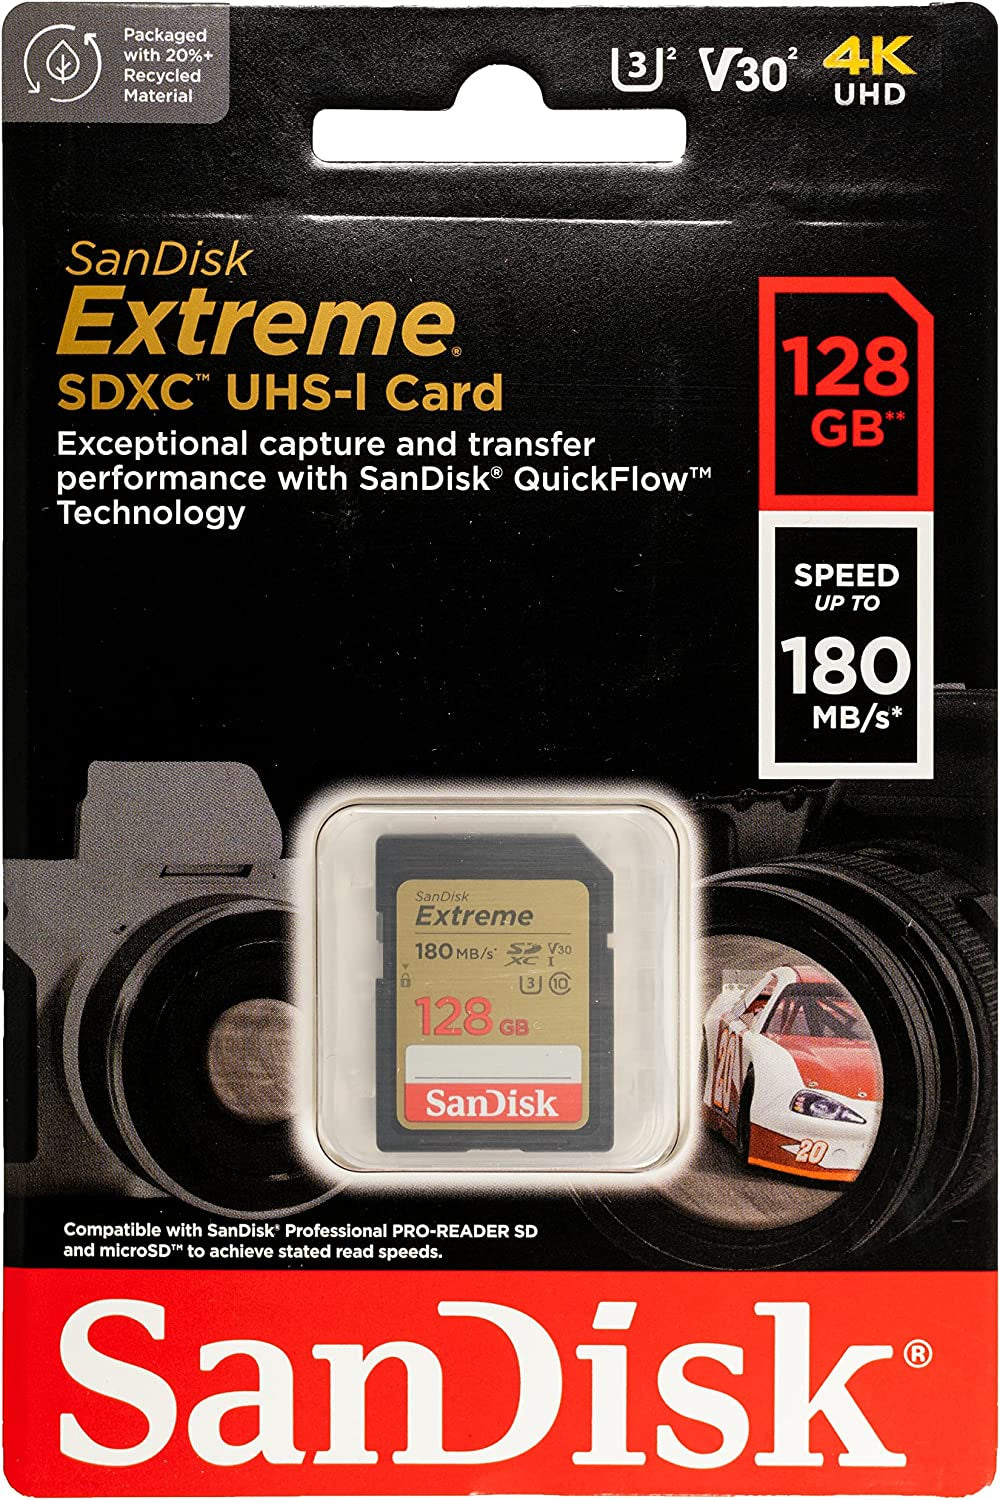 SanDisk Extreme 128GB SDXC spominska kartica + 1 leto RescuePRO Deluxe do180MB/s & 90MB/s branje/zapisovanje, UHS-I, Class 10, U3, V30